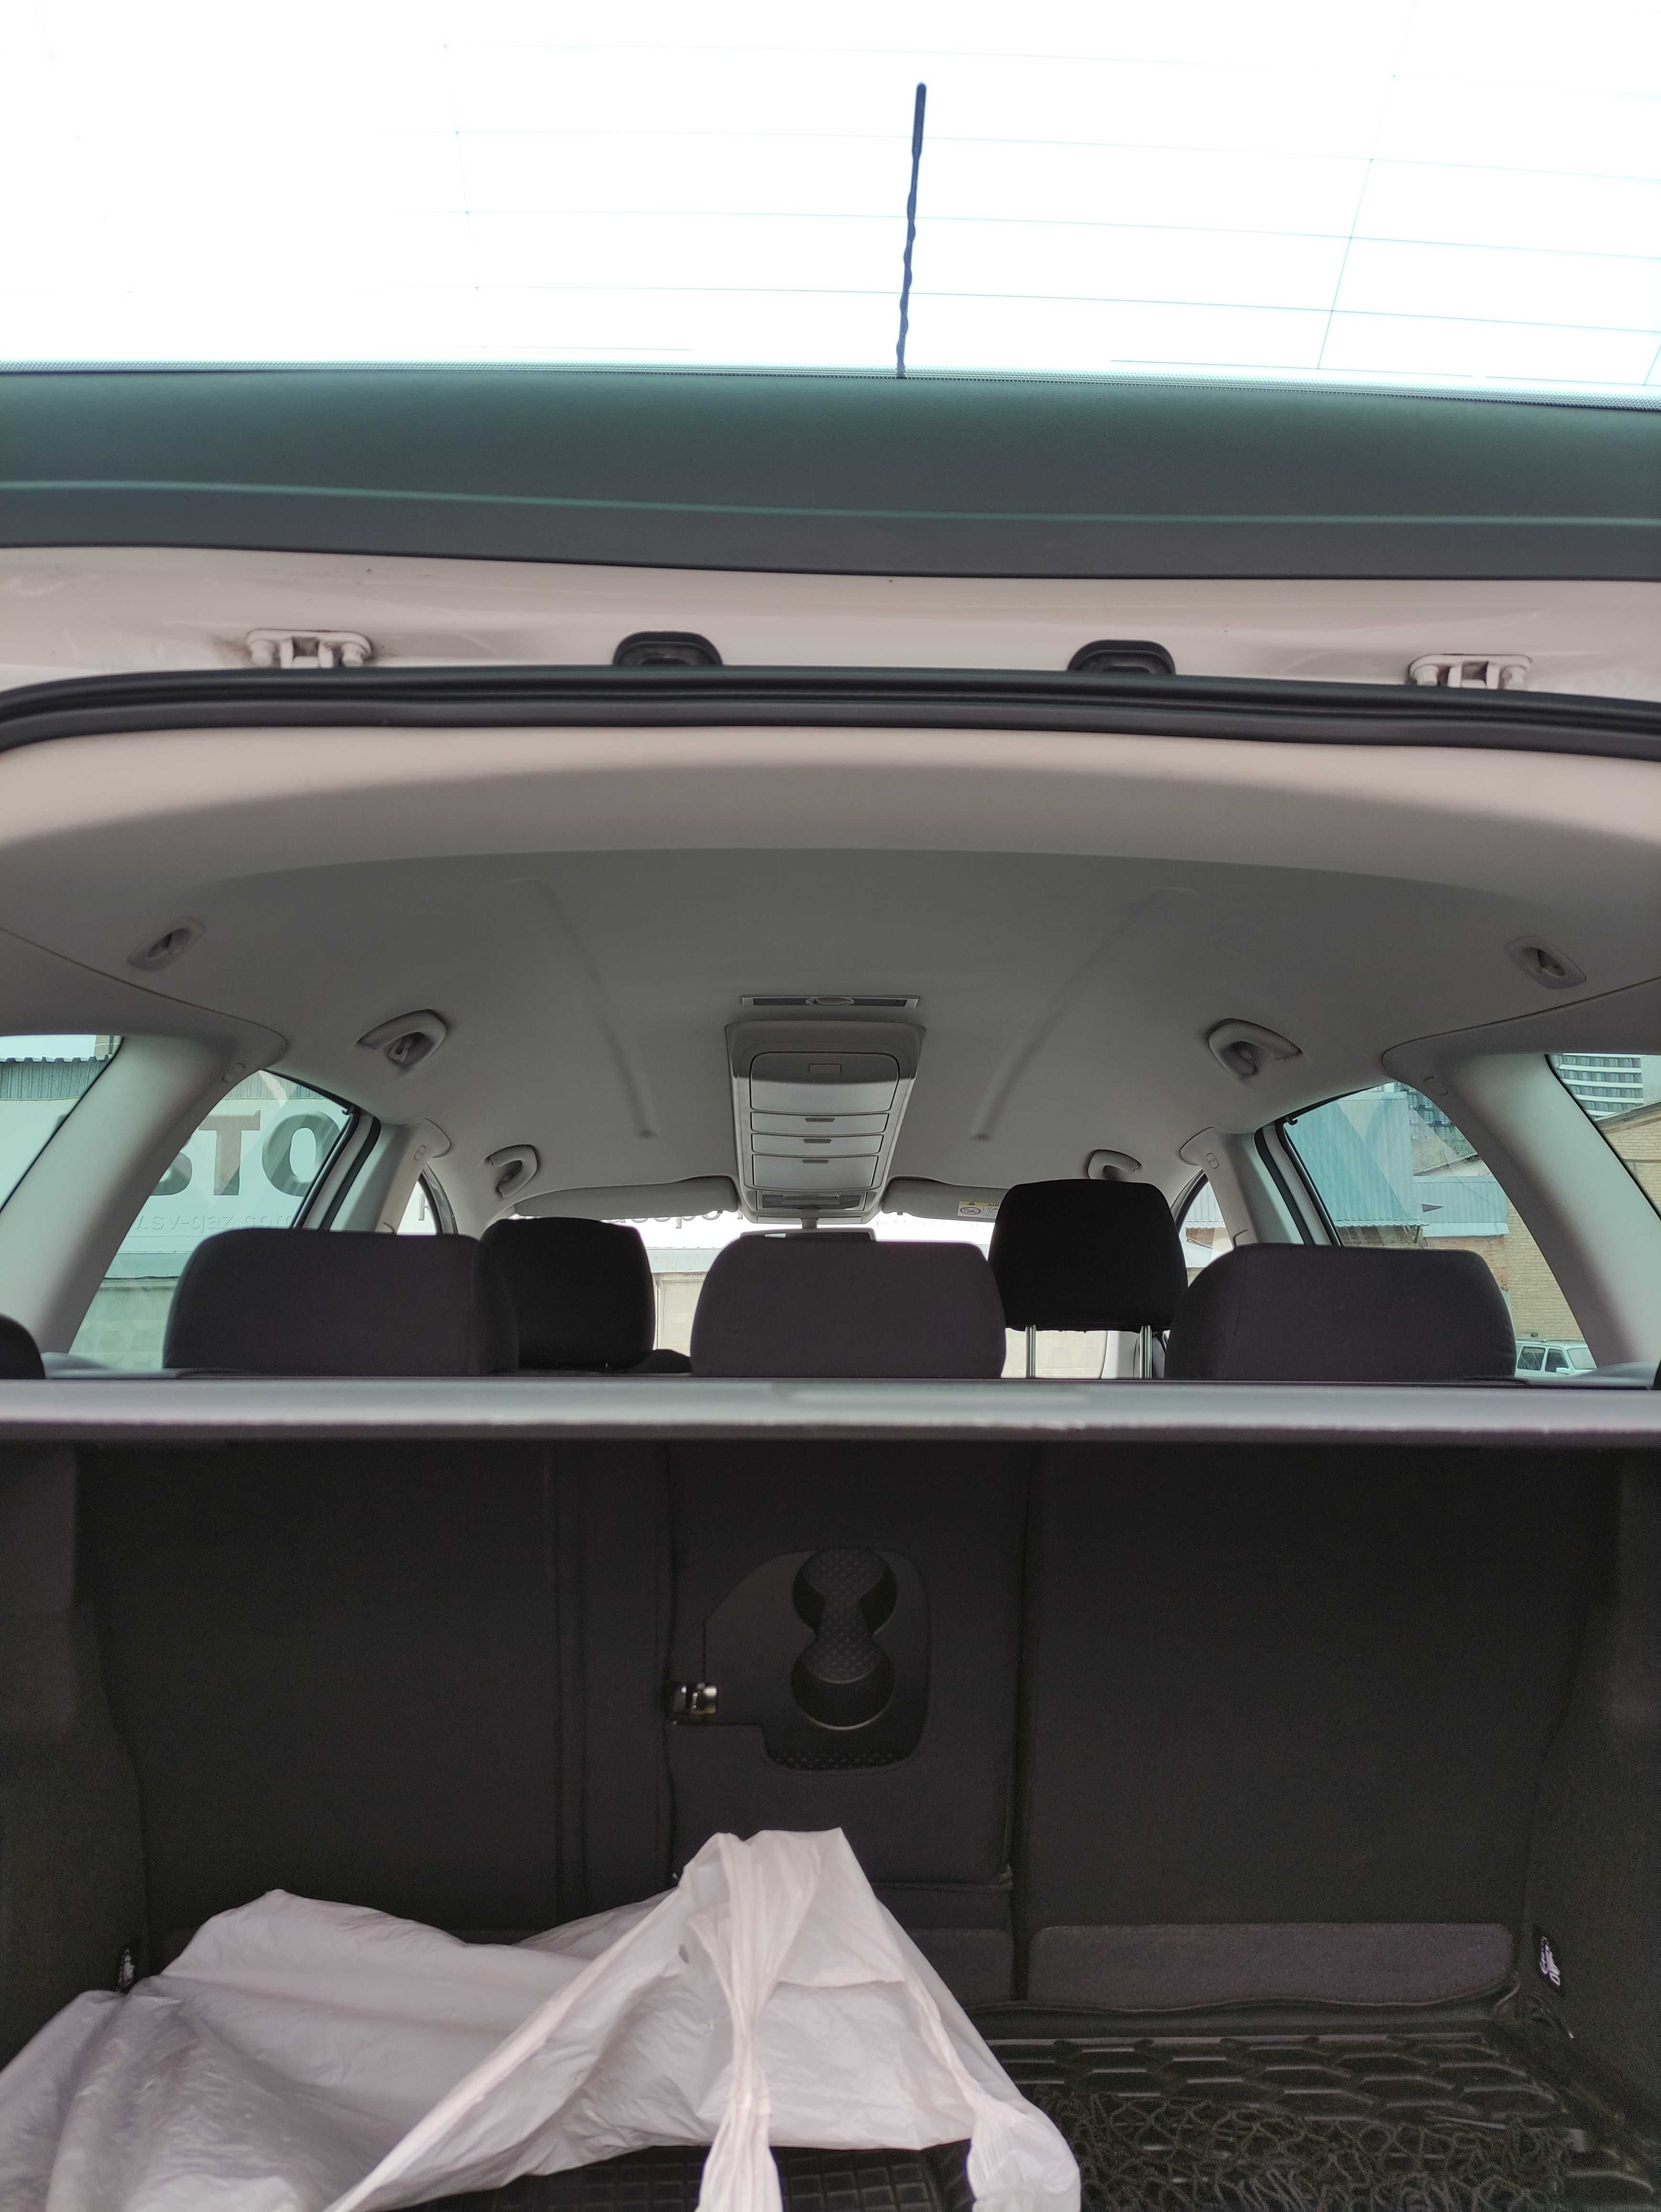 Автомобіль Seat altea xl 2015 1.6 TDI